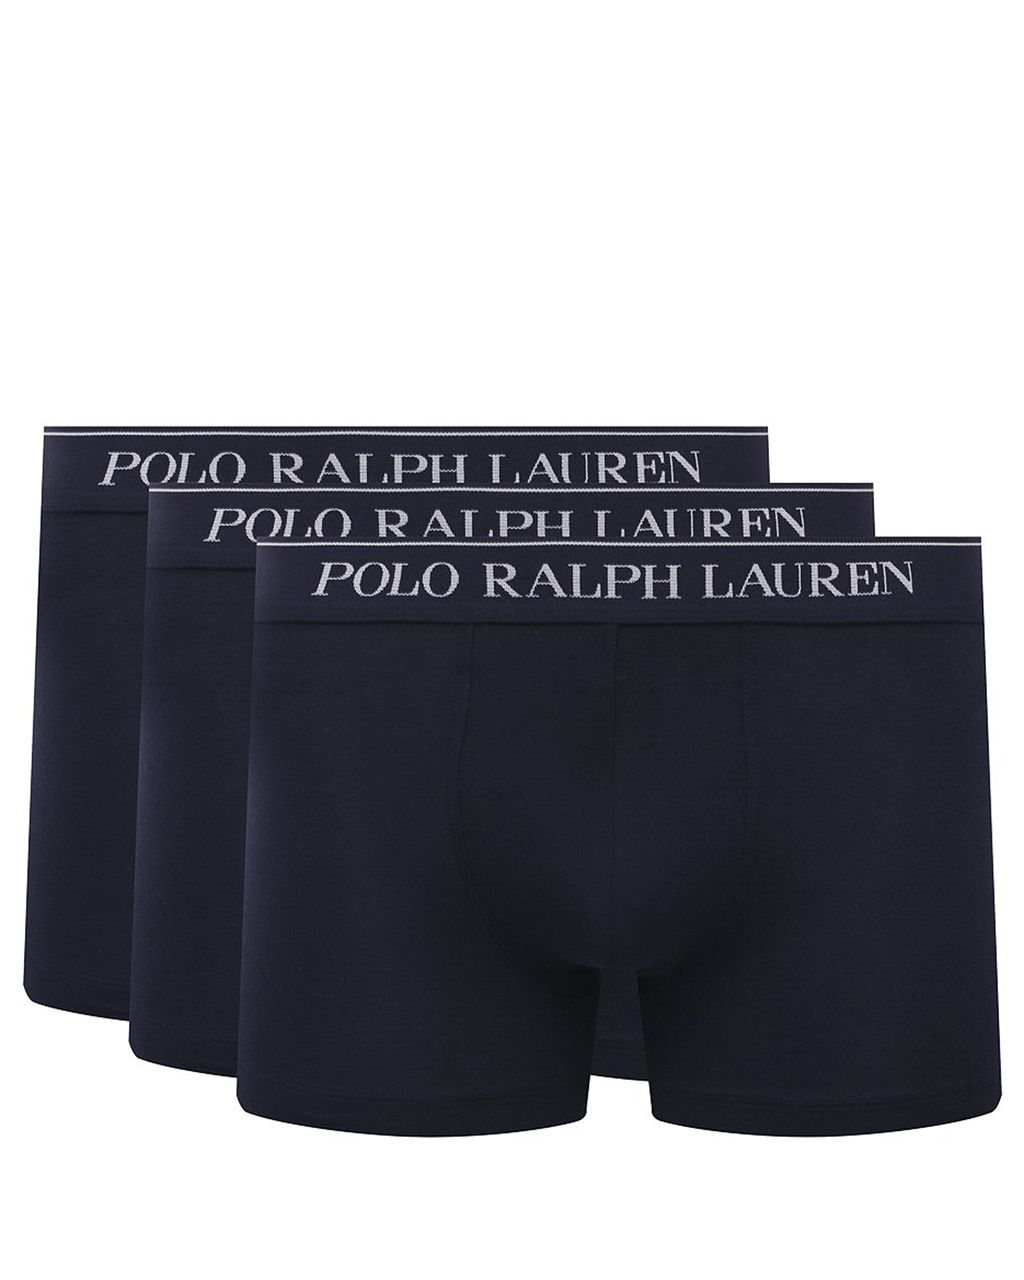 Polo Ralph Lauren Boxershort Donker blauw 078602-001-L